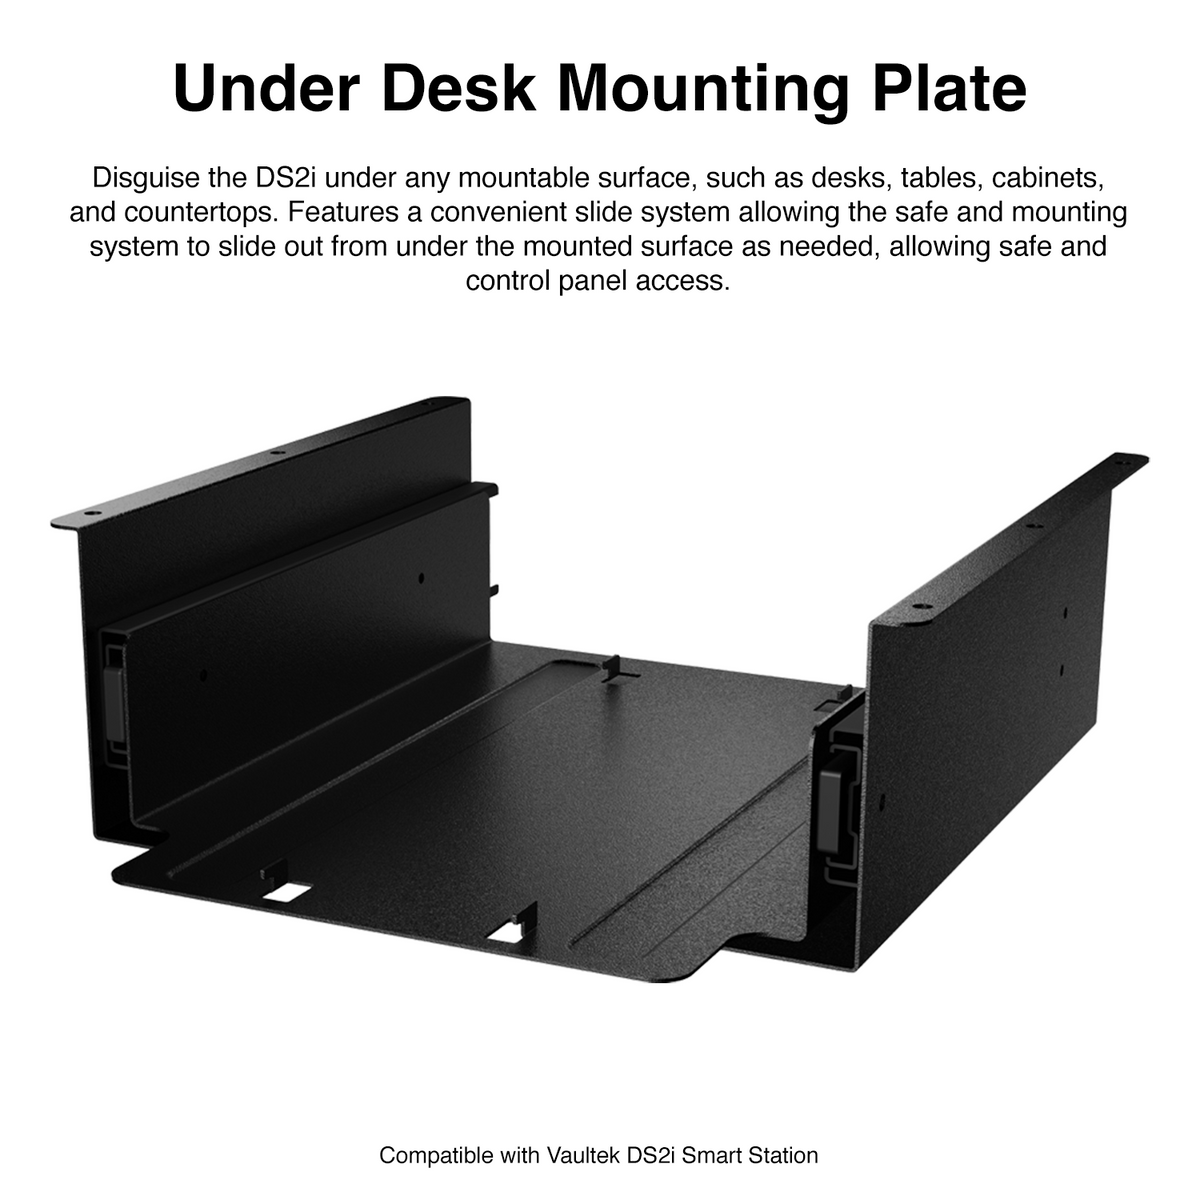 Under Desk Mounting Plate for Vaultek Smart Station DS2i